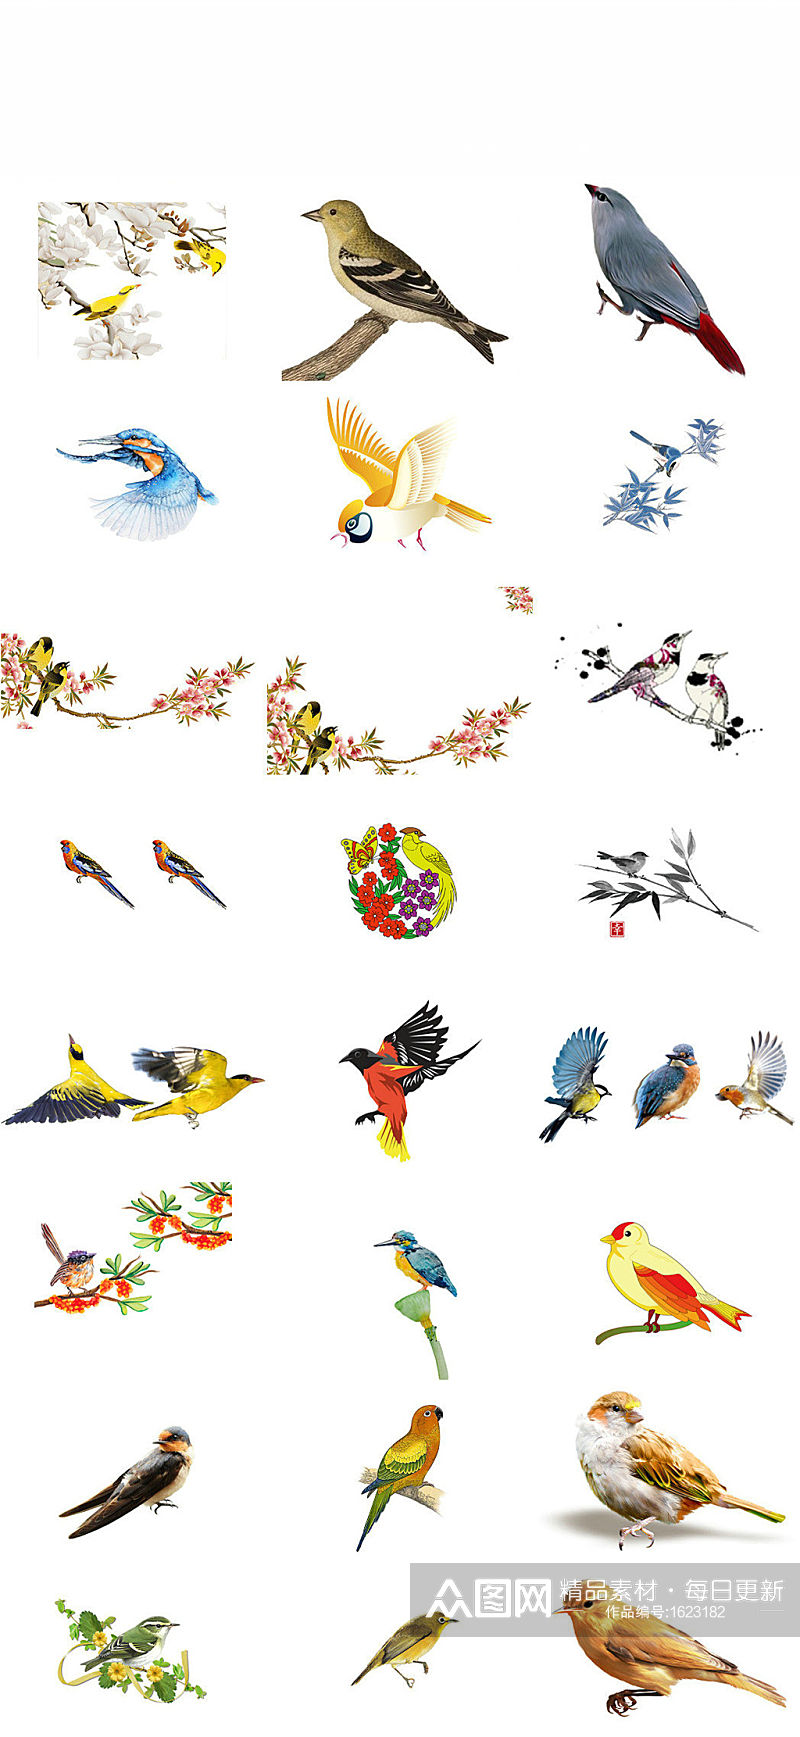 鸟类动物黄鹂海报设计素材素材